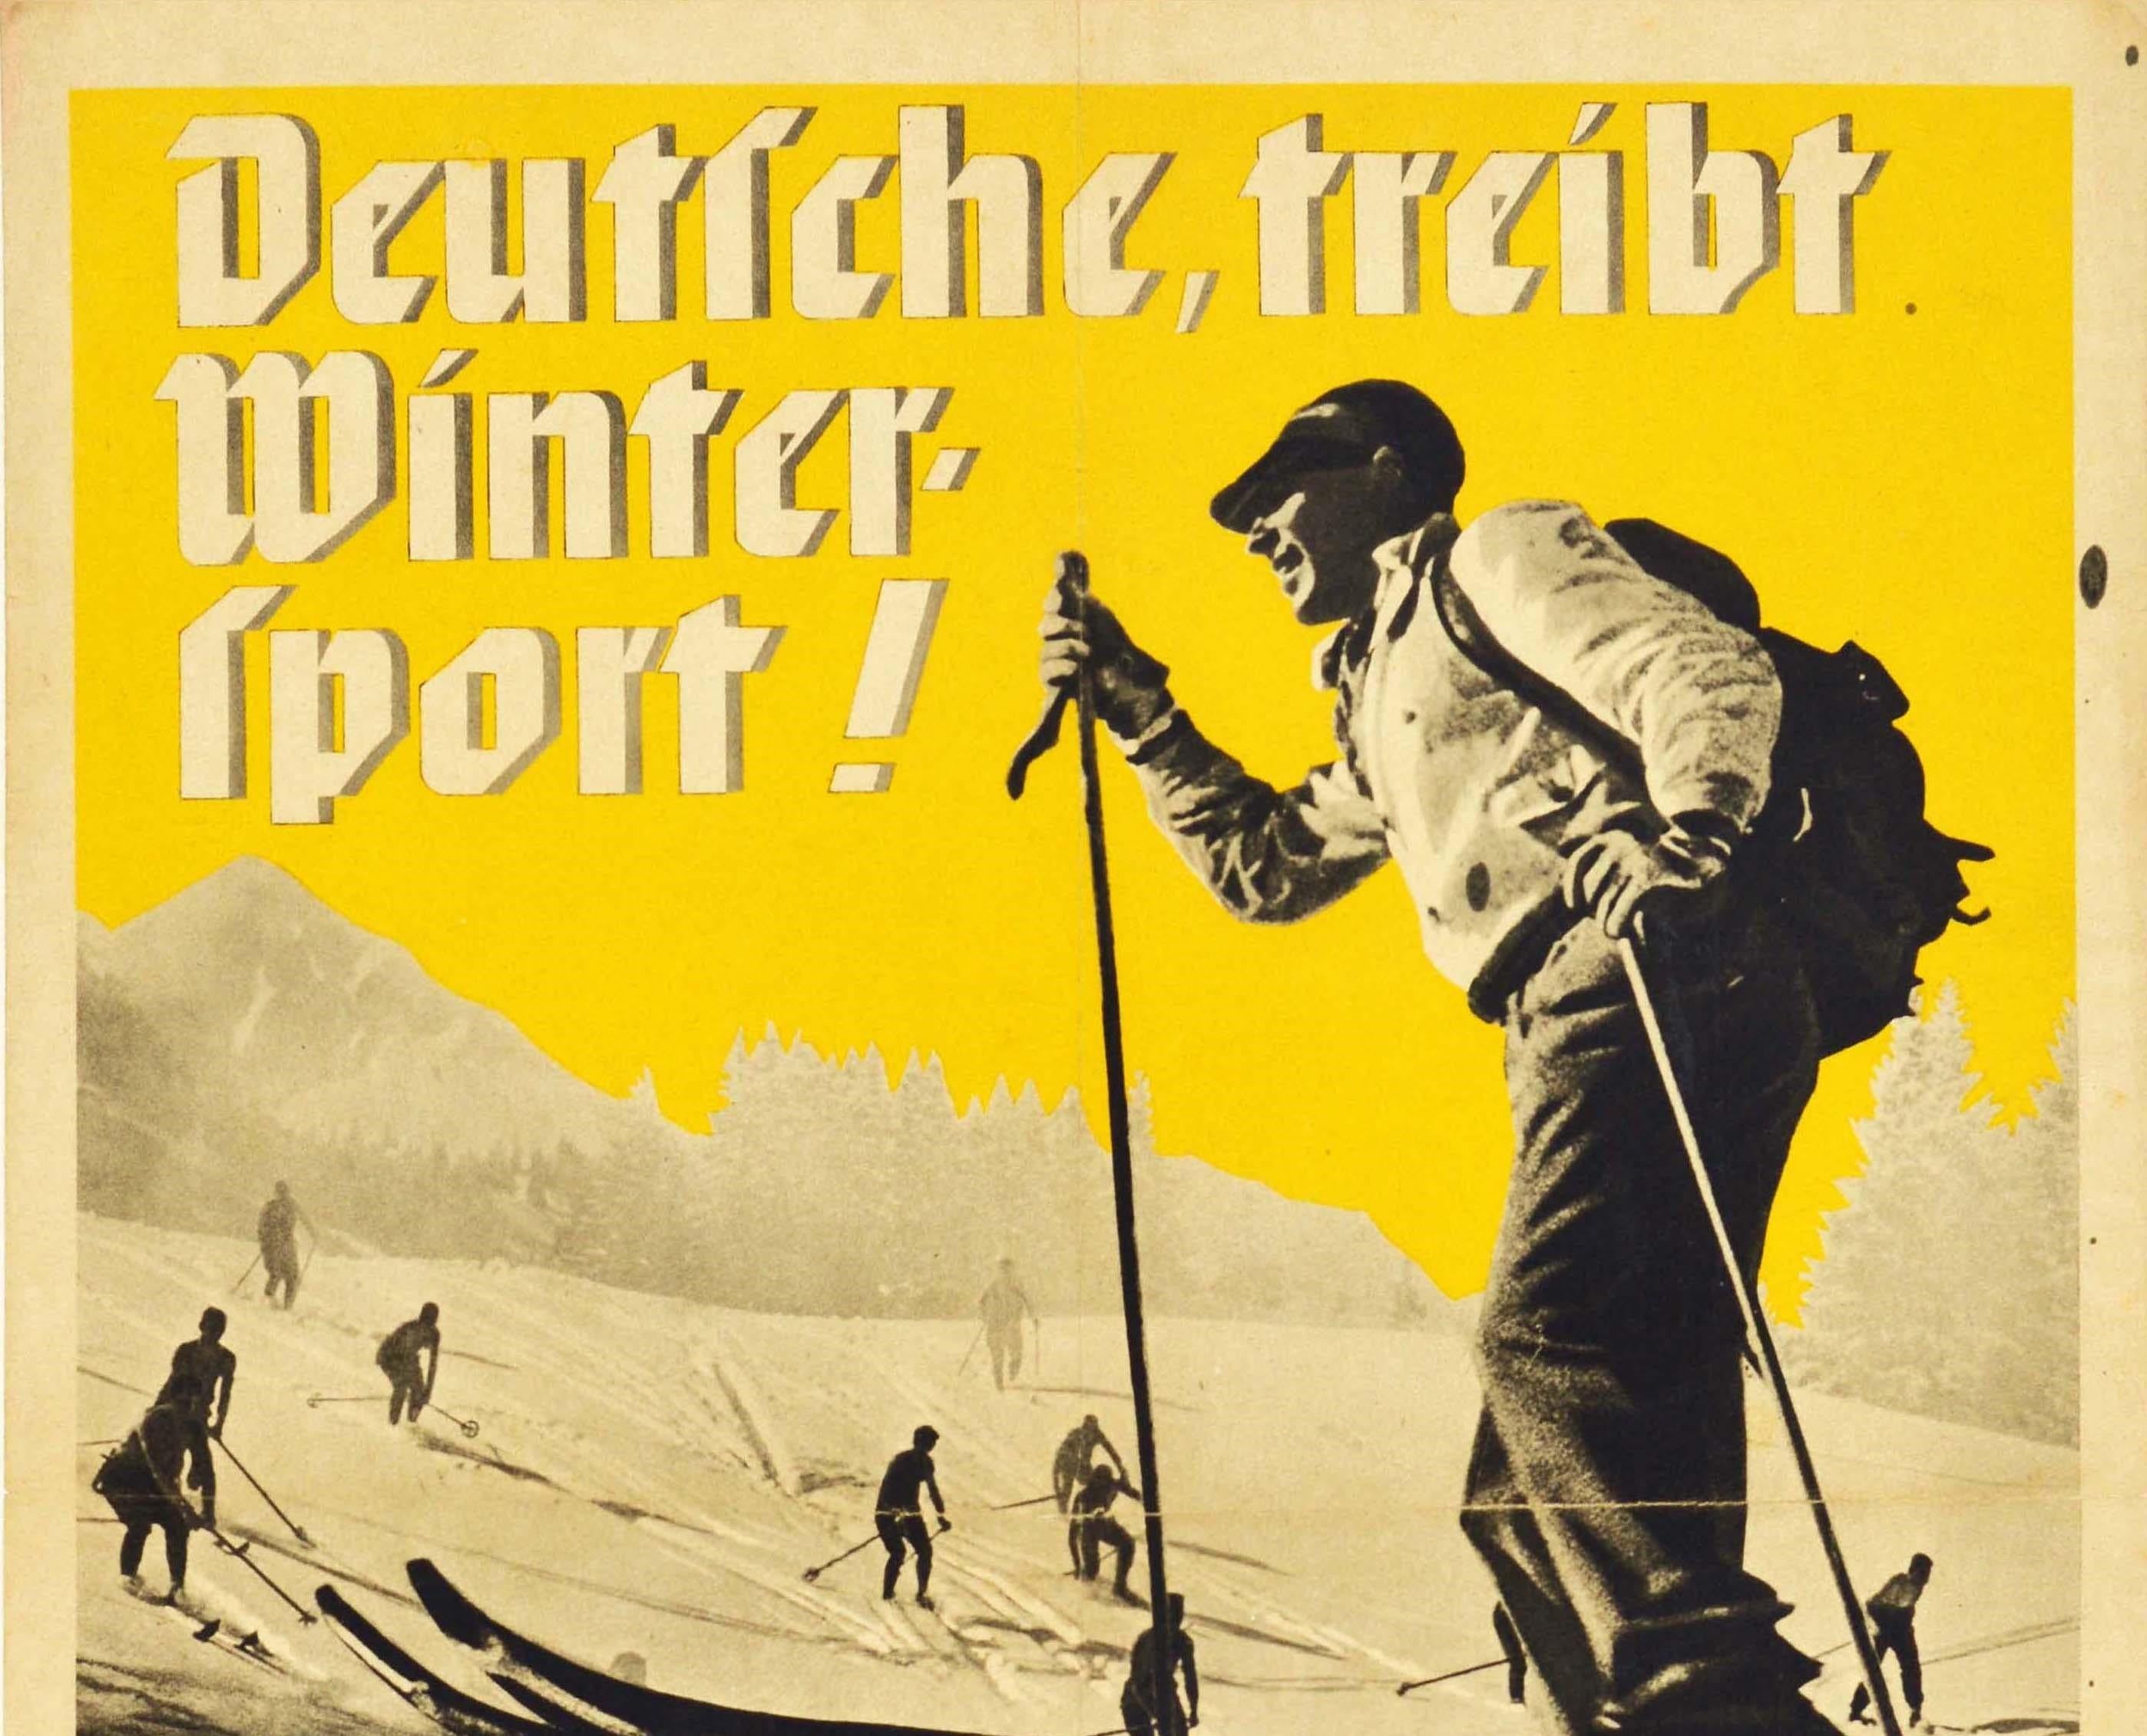 Affiche originale d'époque pour une semaine de promotion des sports d'hiver du 11 au 18 novembre 1934 - Germans, try winter sports ! / Deutsche, treibt Wintersport ! - avec un homme souriant soulevant un ski au premier plan et des skieurs dévalant